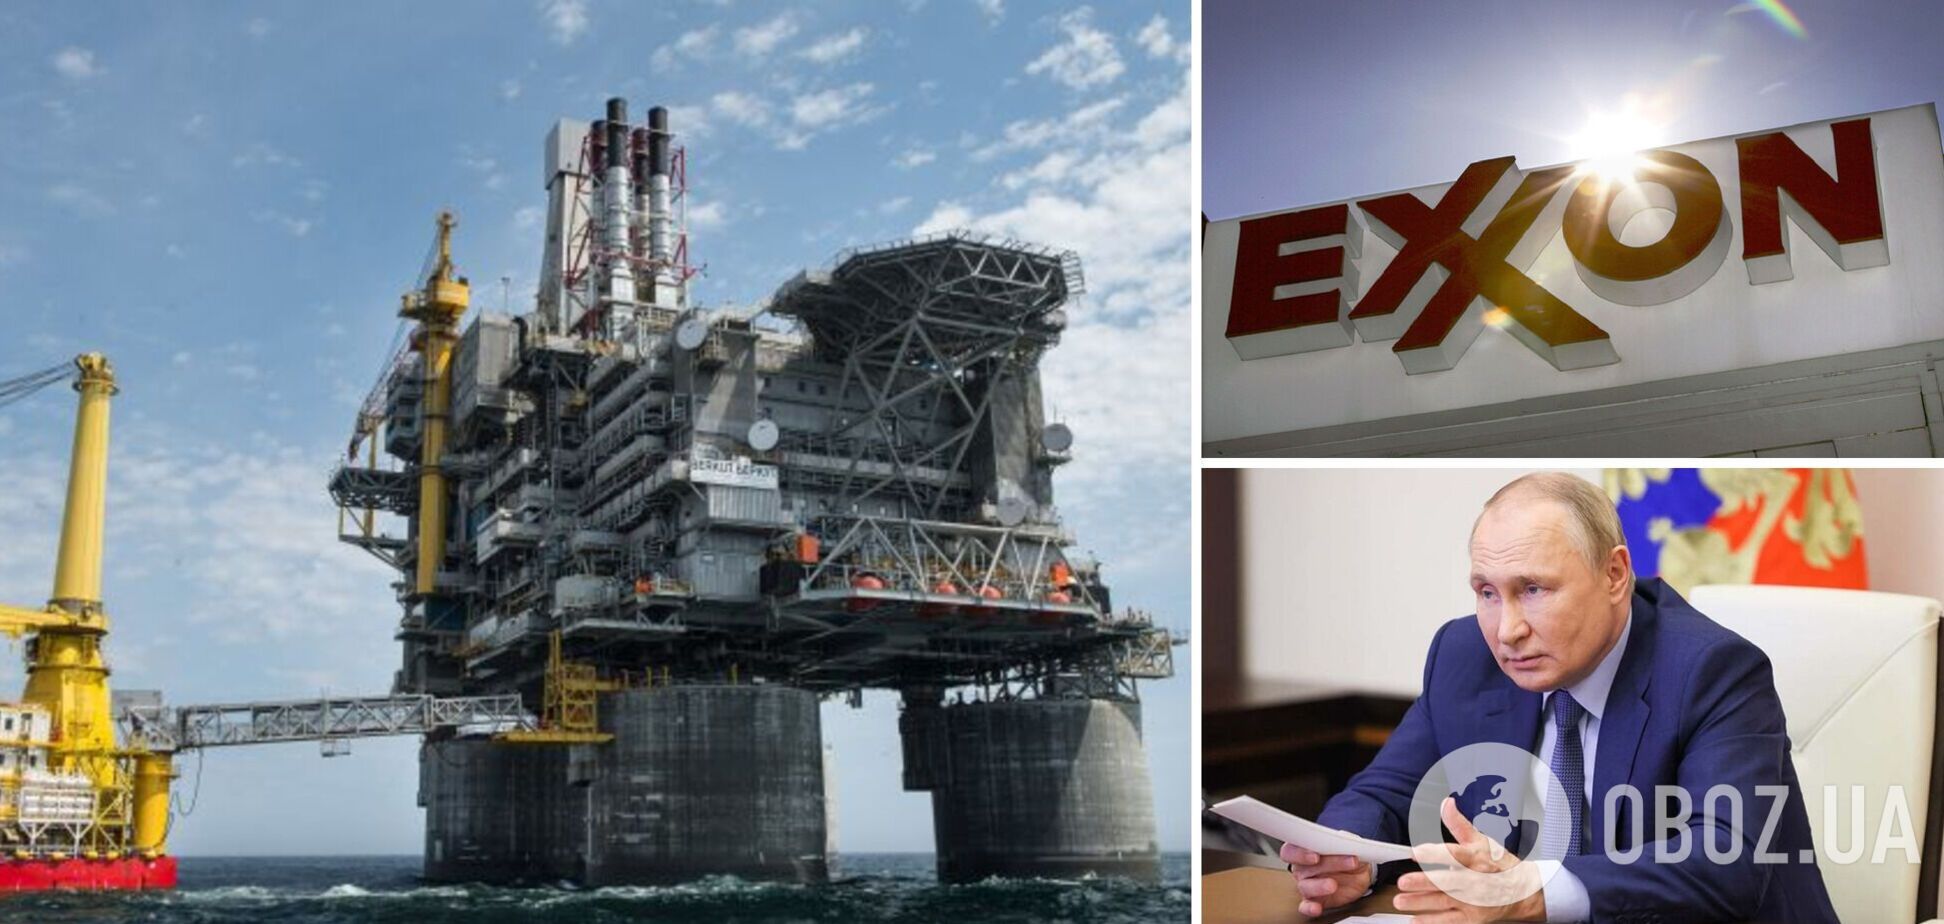 Американская компания Exxon вышла из бизнеса в России